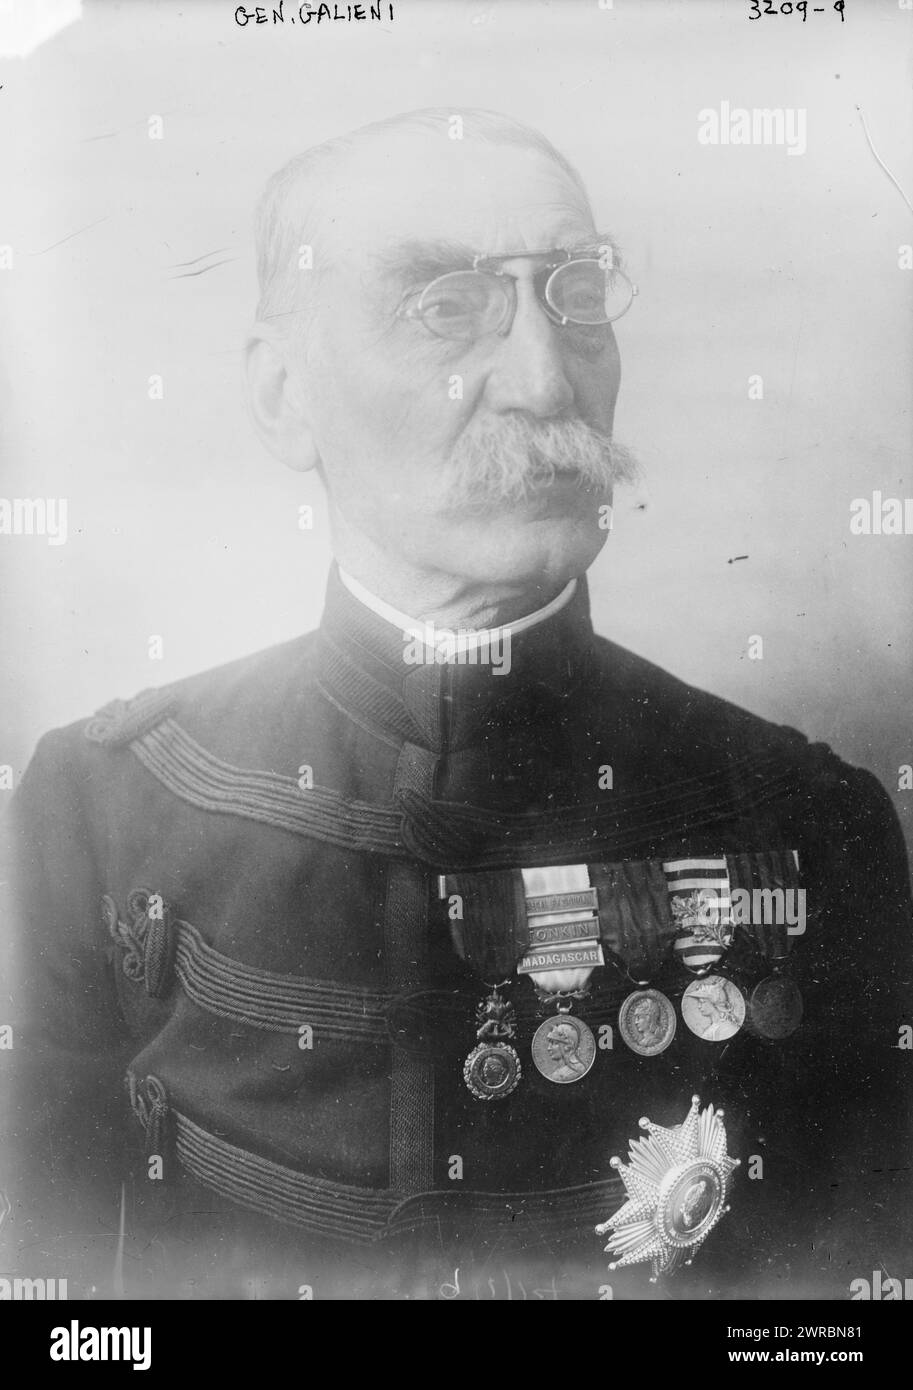 Gen. Galieni, d. h. Gallieni, Foto zeigt Joseph Simon Gallieni (1849–1916), einen französischen General, der während des Ersten Weltkriegs zwischen ca. 1910 und ca. 1915, Glasnegative, 1 negativ: Glas Stockfoto